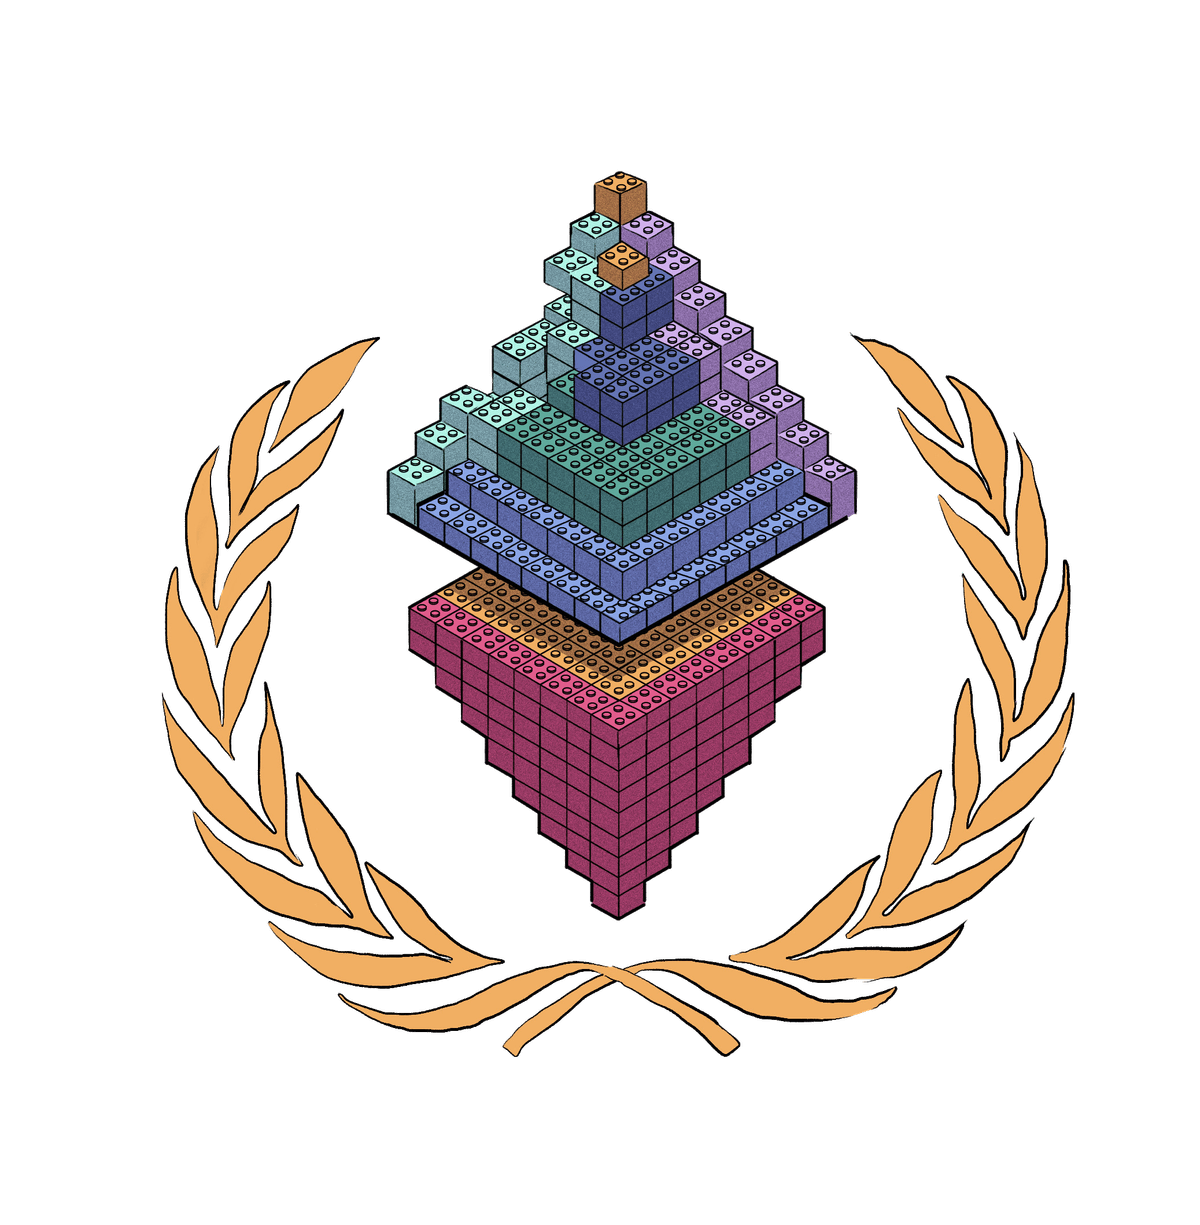 Logo của Ethereum được xếp bằng khối lego.